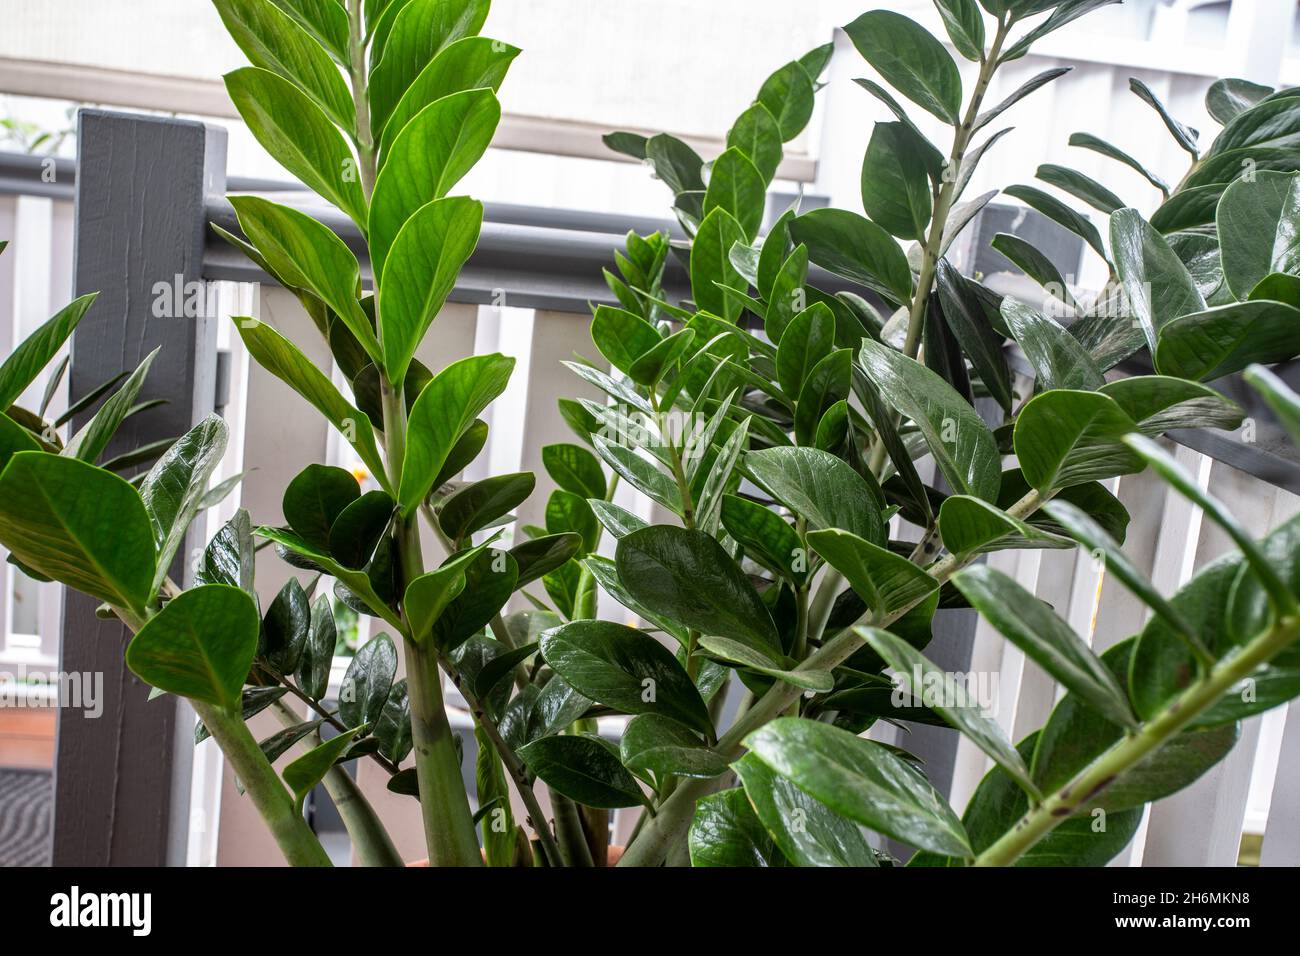 Immagine della pianta ZZ, Zamioculcas zamiifolia, chiamata anche Zanzibar  Gem, una pianta perenne ornamentale sempreverde tropicale originaria  dell'Africa orientale Foto stock - Alamy